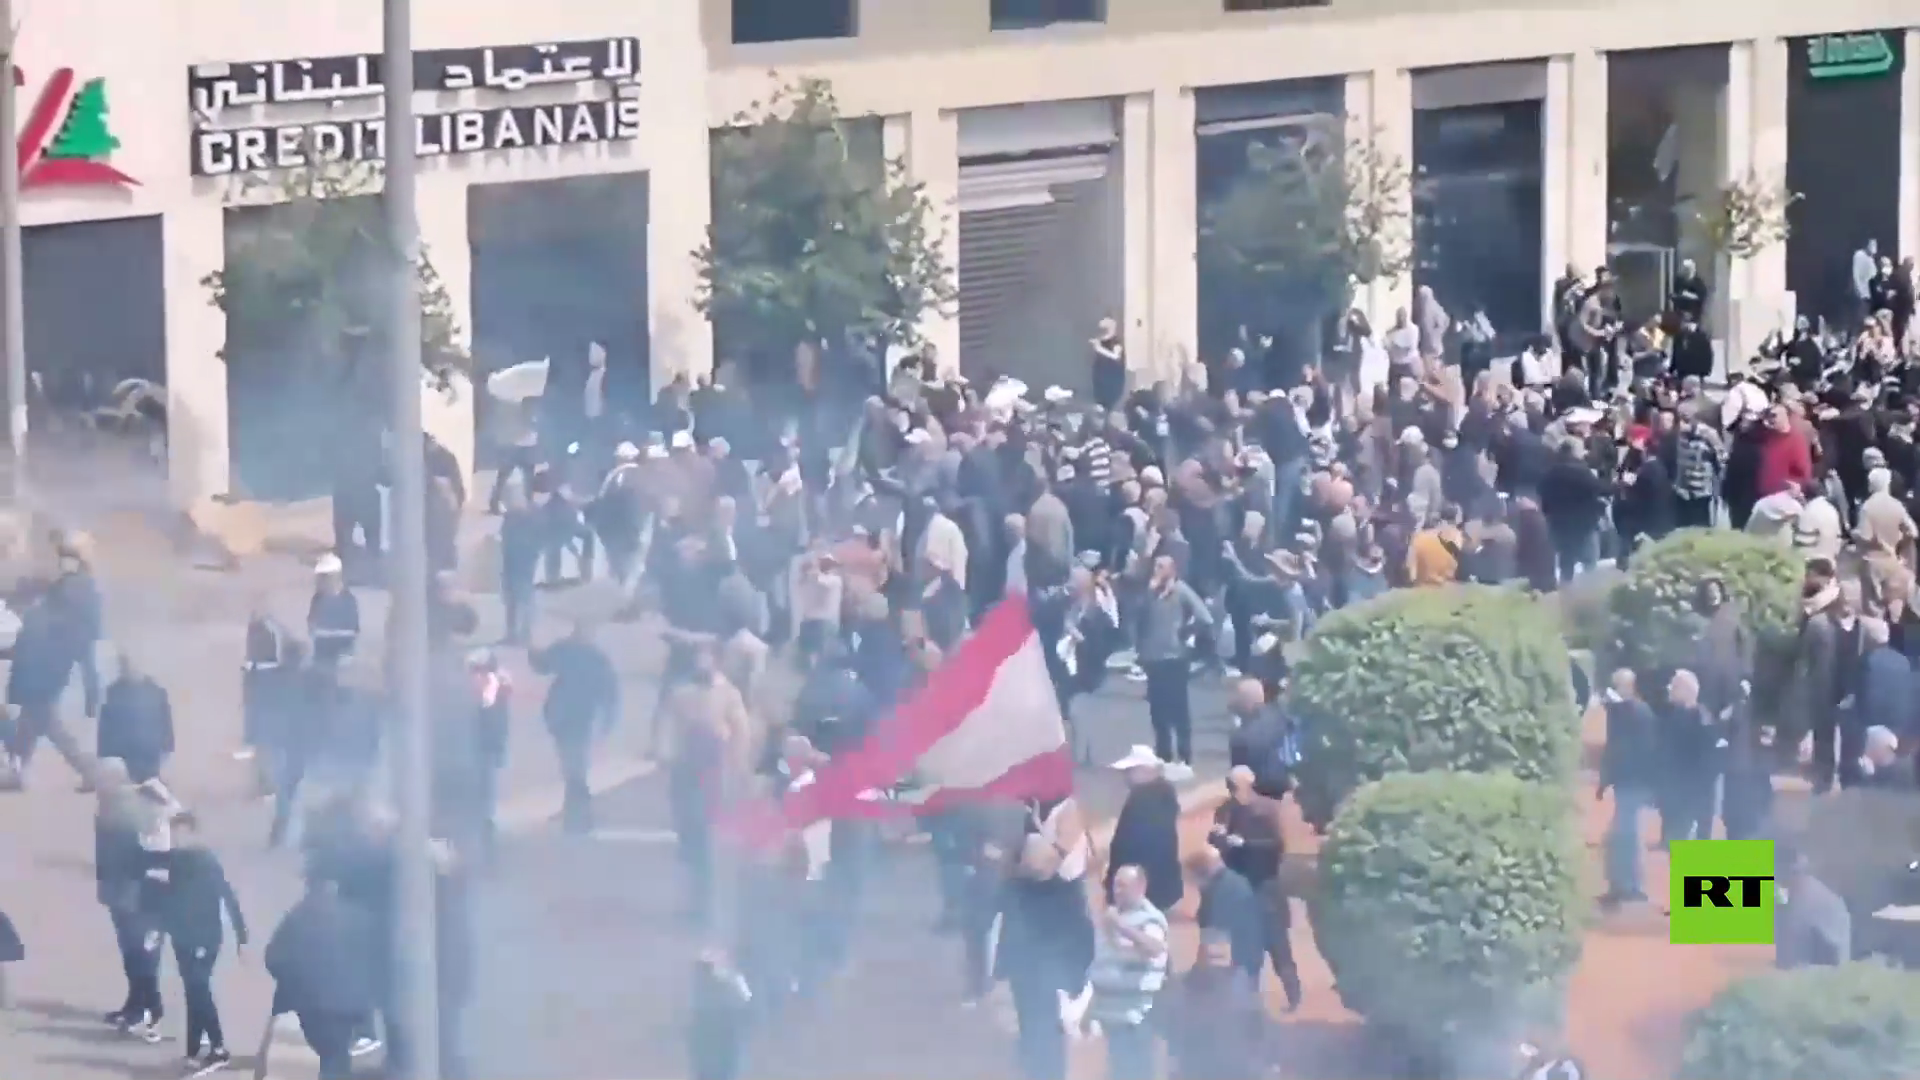 بالفيديو.. الشرطة تستخدم الغاز المسيل للدموع ضد المتظاهرين في بيروت